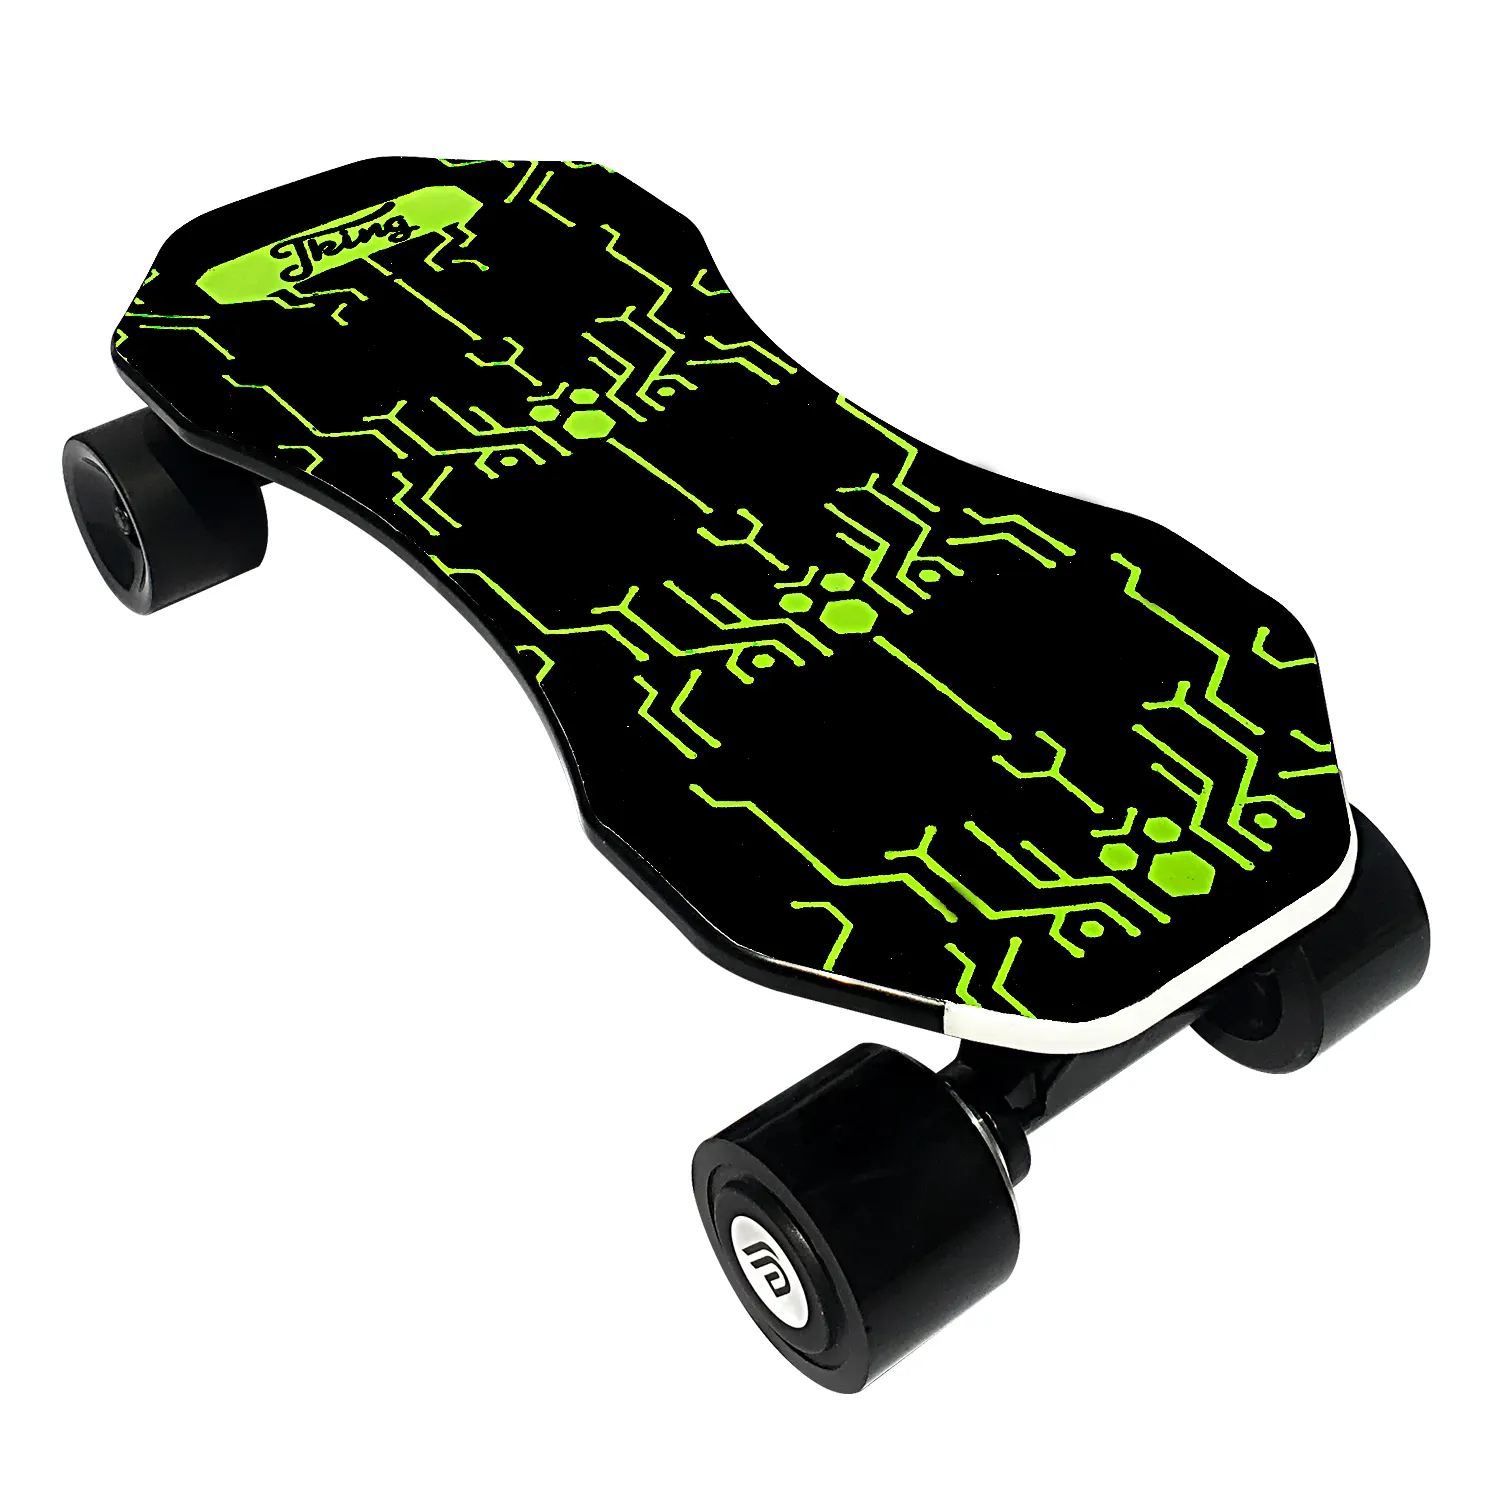 2021 the best design kick skateboard for skater professional skater product from supplier electric skateboard belt drive skatebo